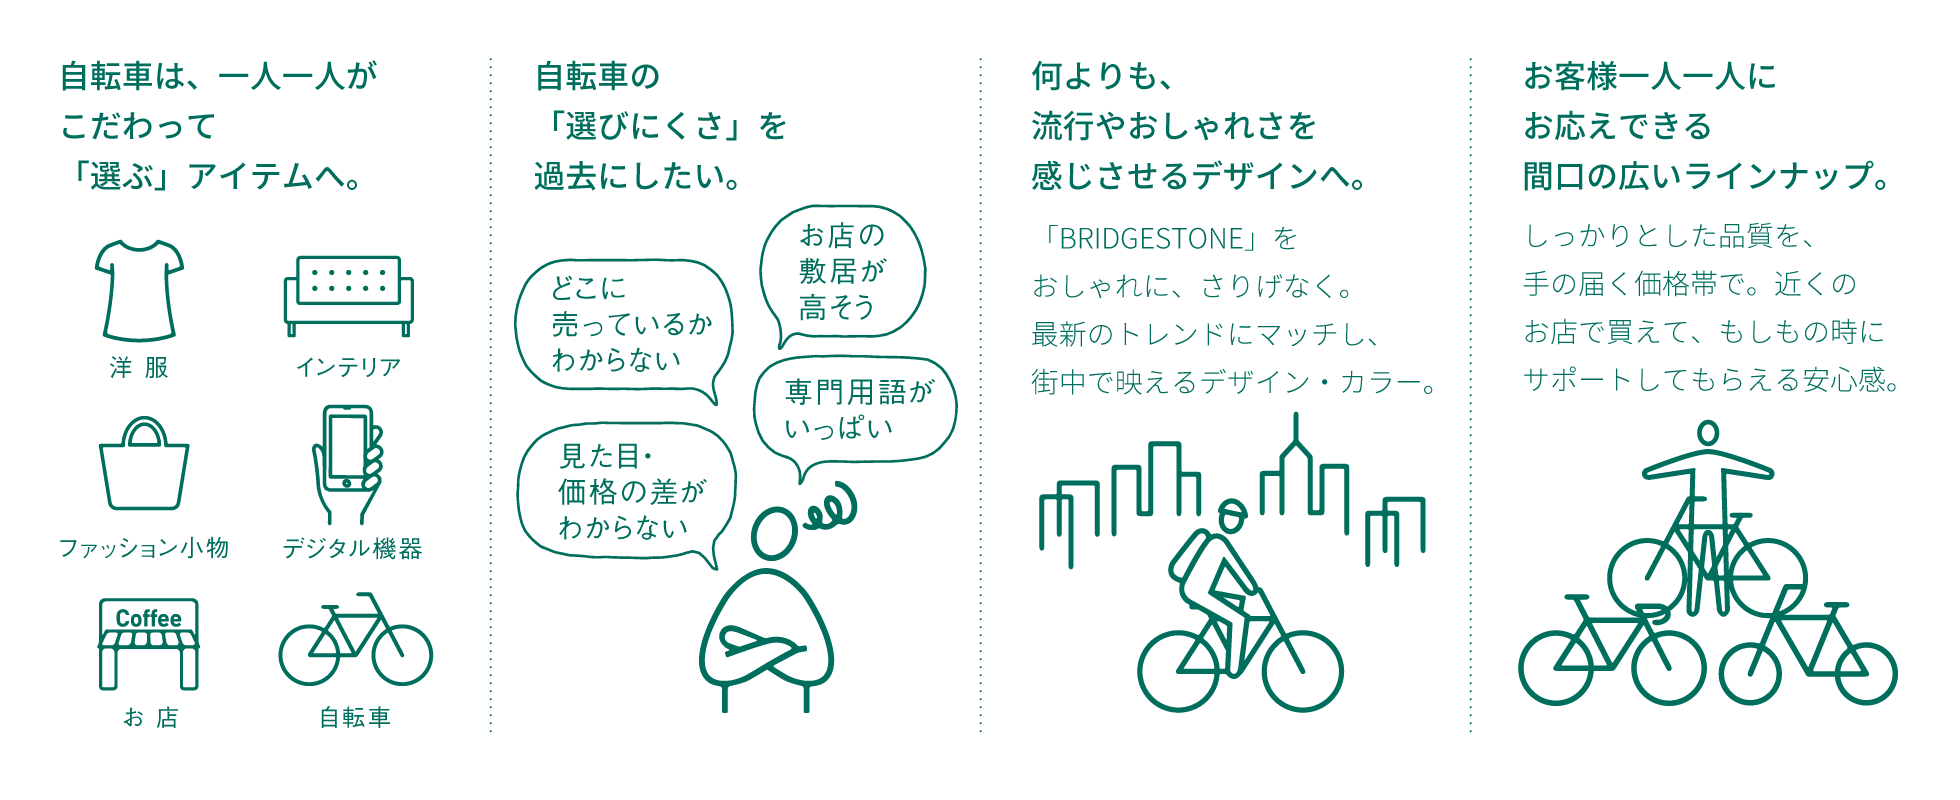 自転車は、一人一人がこだわって「選ぶ」アイテムへ。／自転車の「選びにくさ」を過去にしたい。／何よりも、流行やおしゃれさを感じさせるデザインへ。／お客様一人一人にお応えできる間口の広いラインナップ。